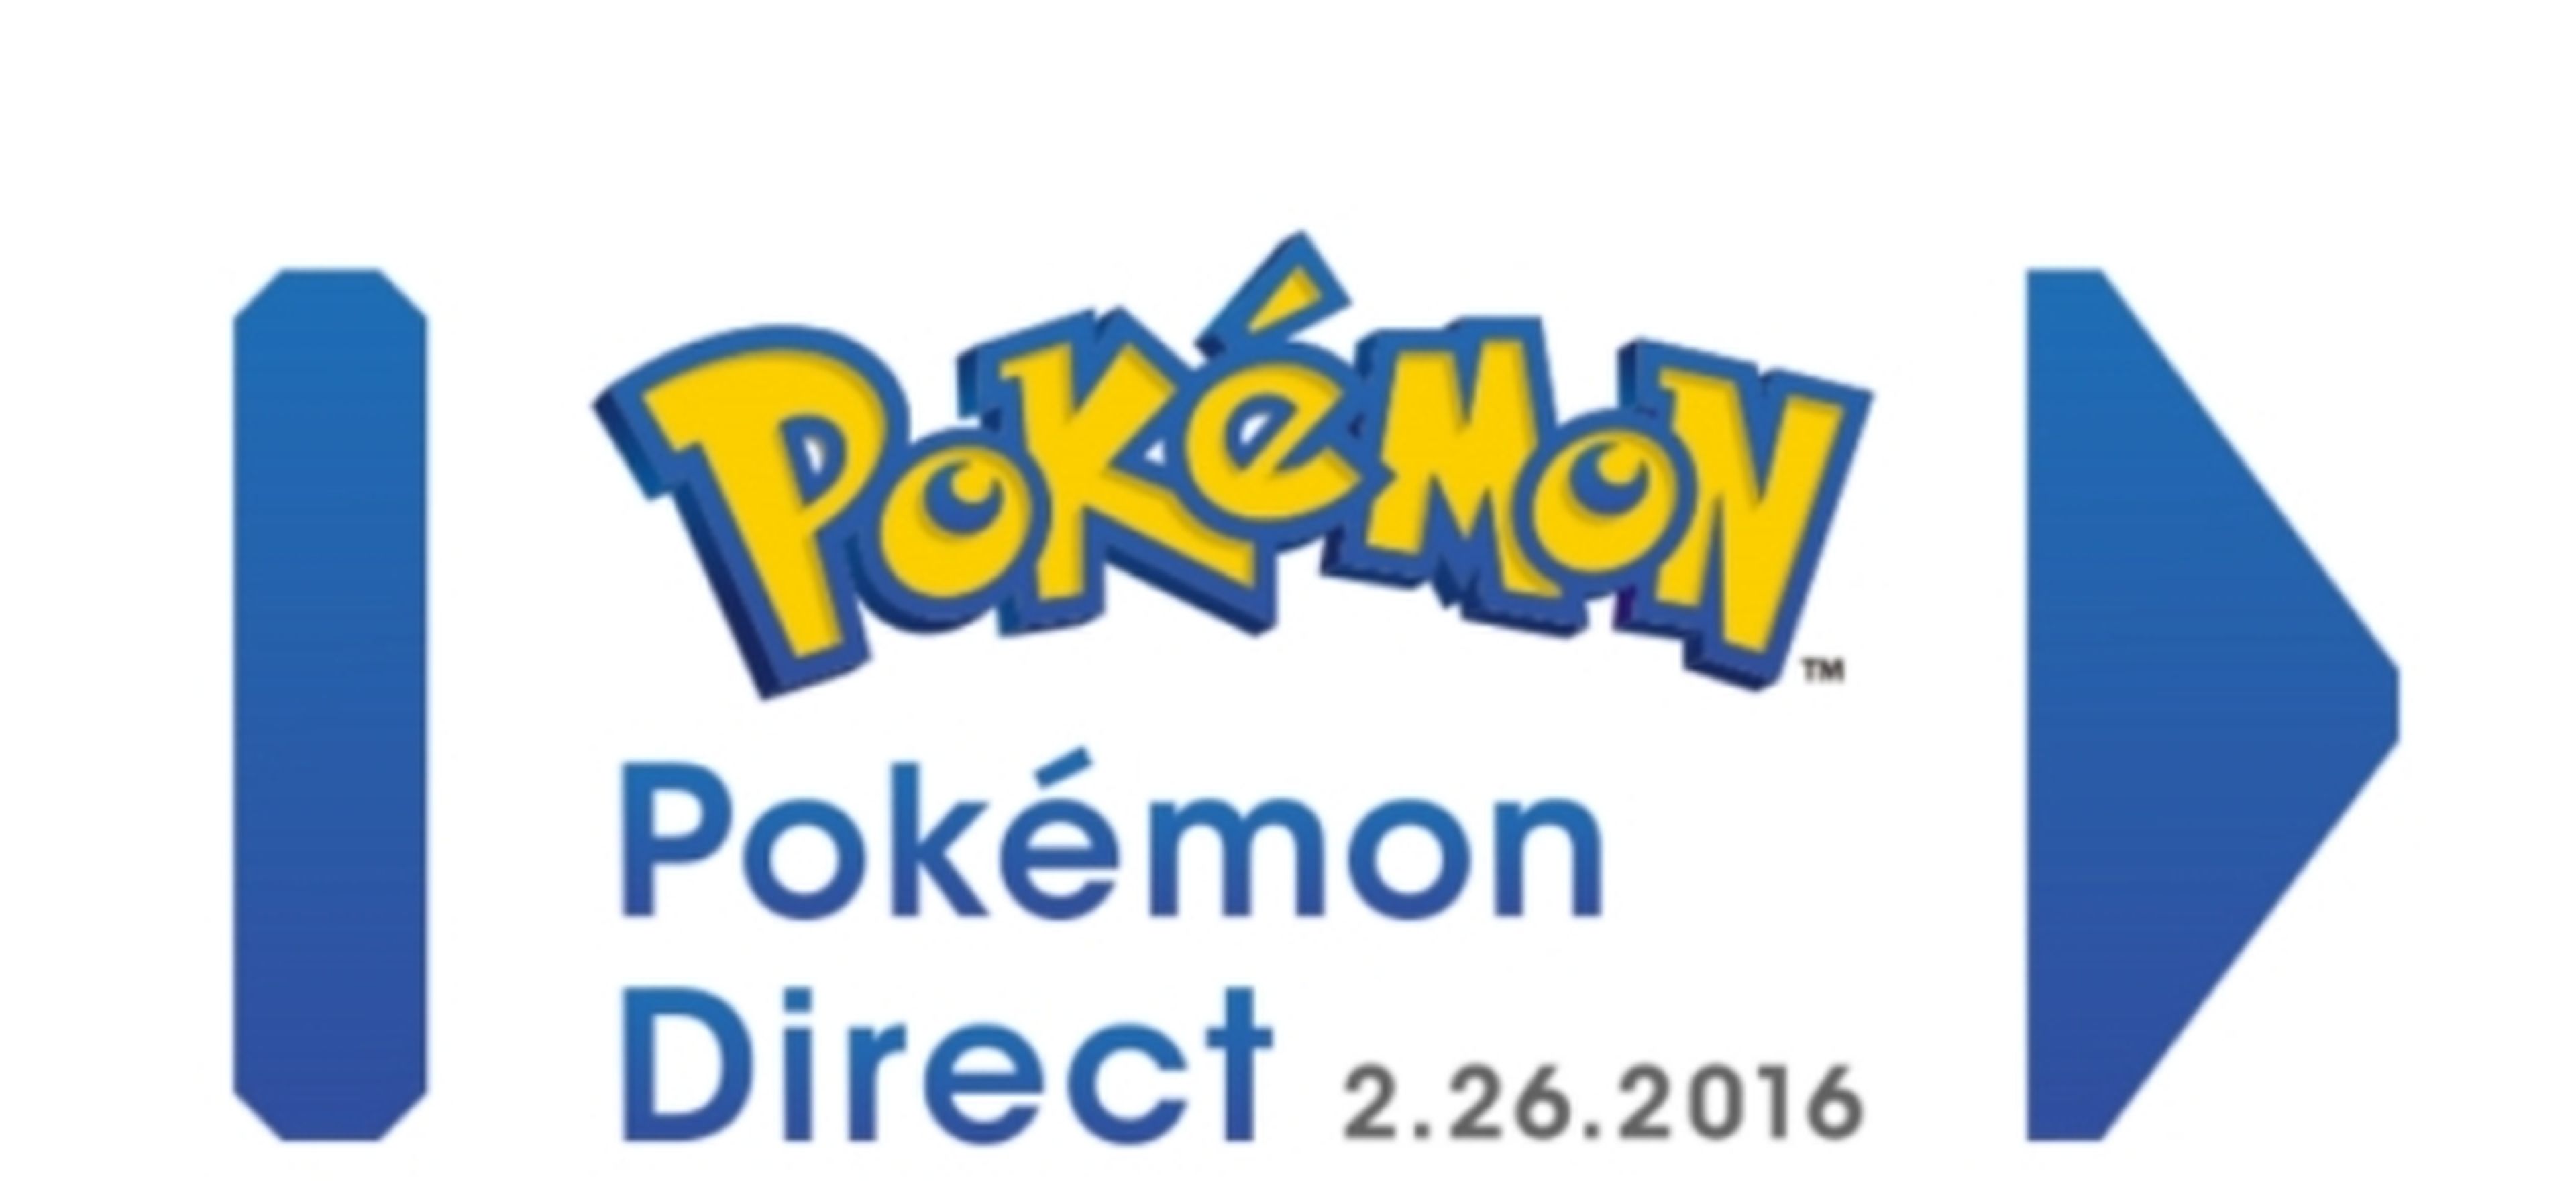 Pokémon Direct - ¡Síguelo con nosotros!